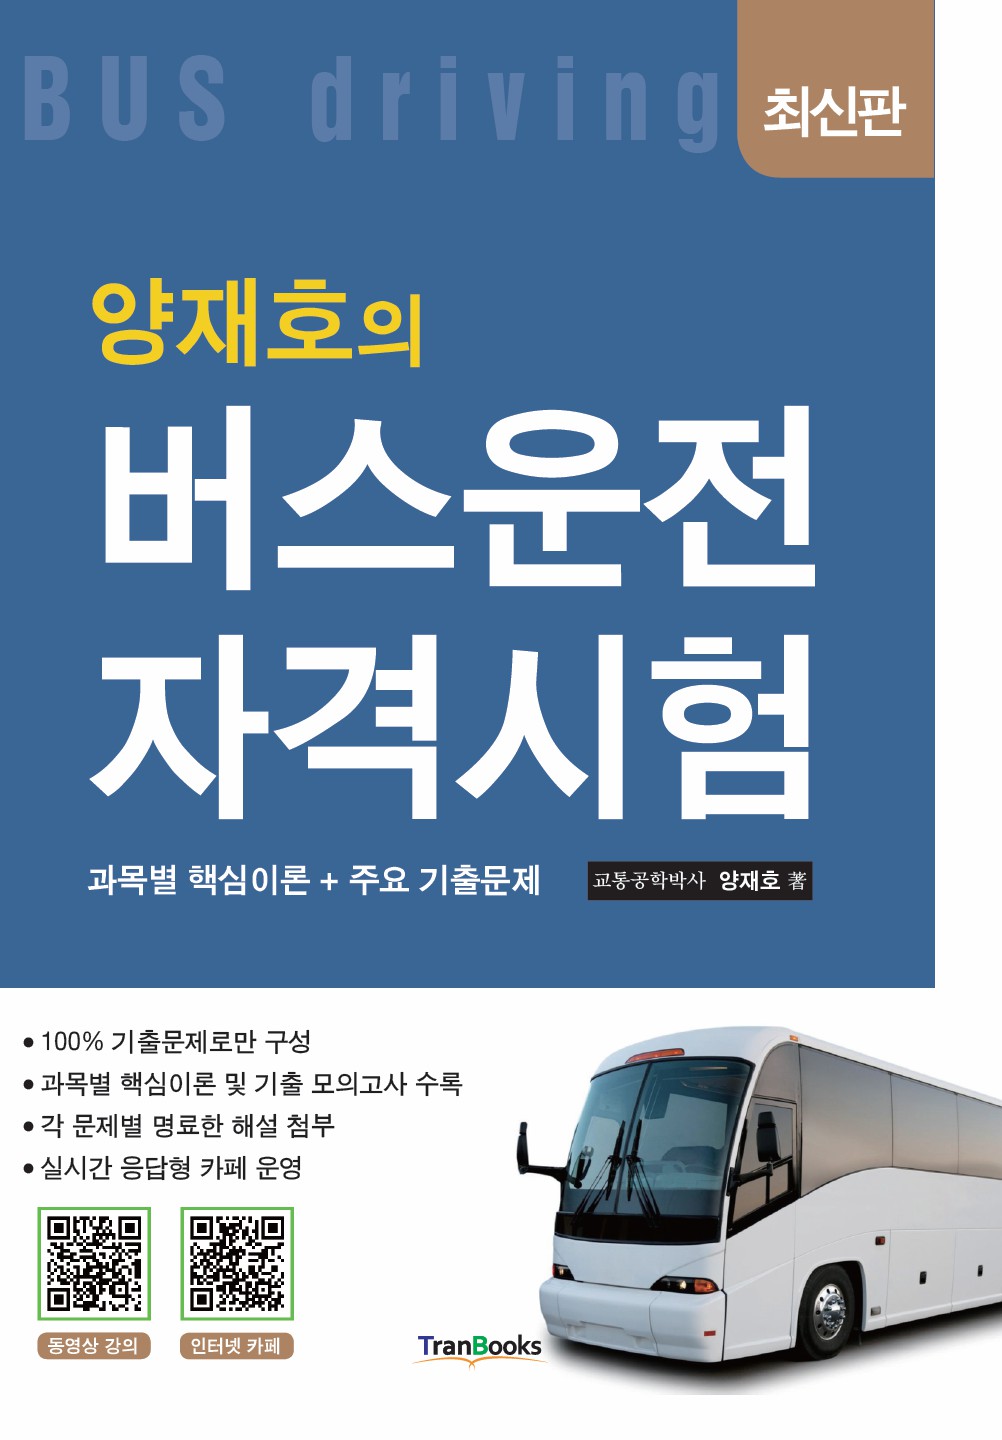 [패키지]버스운전자격시험(7일)